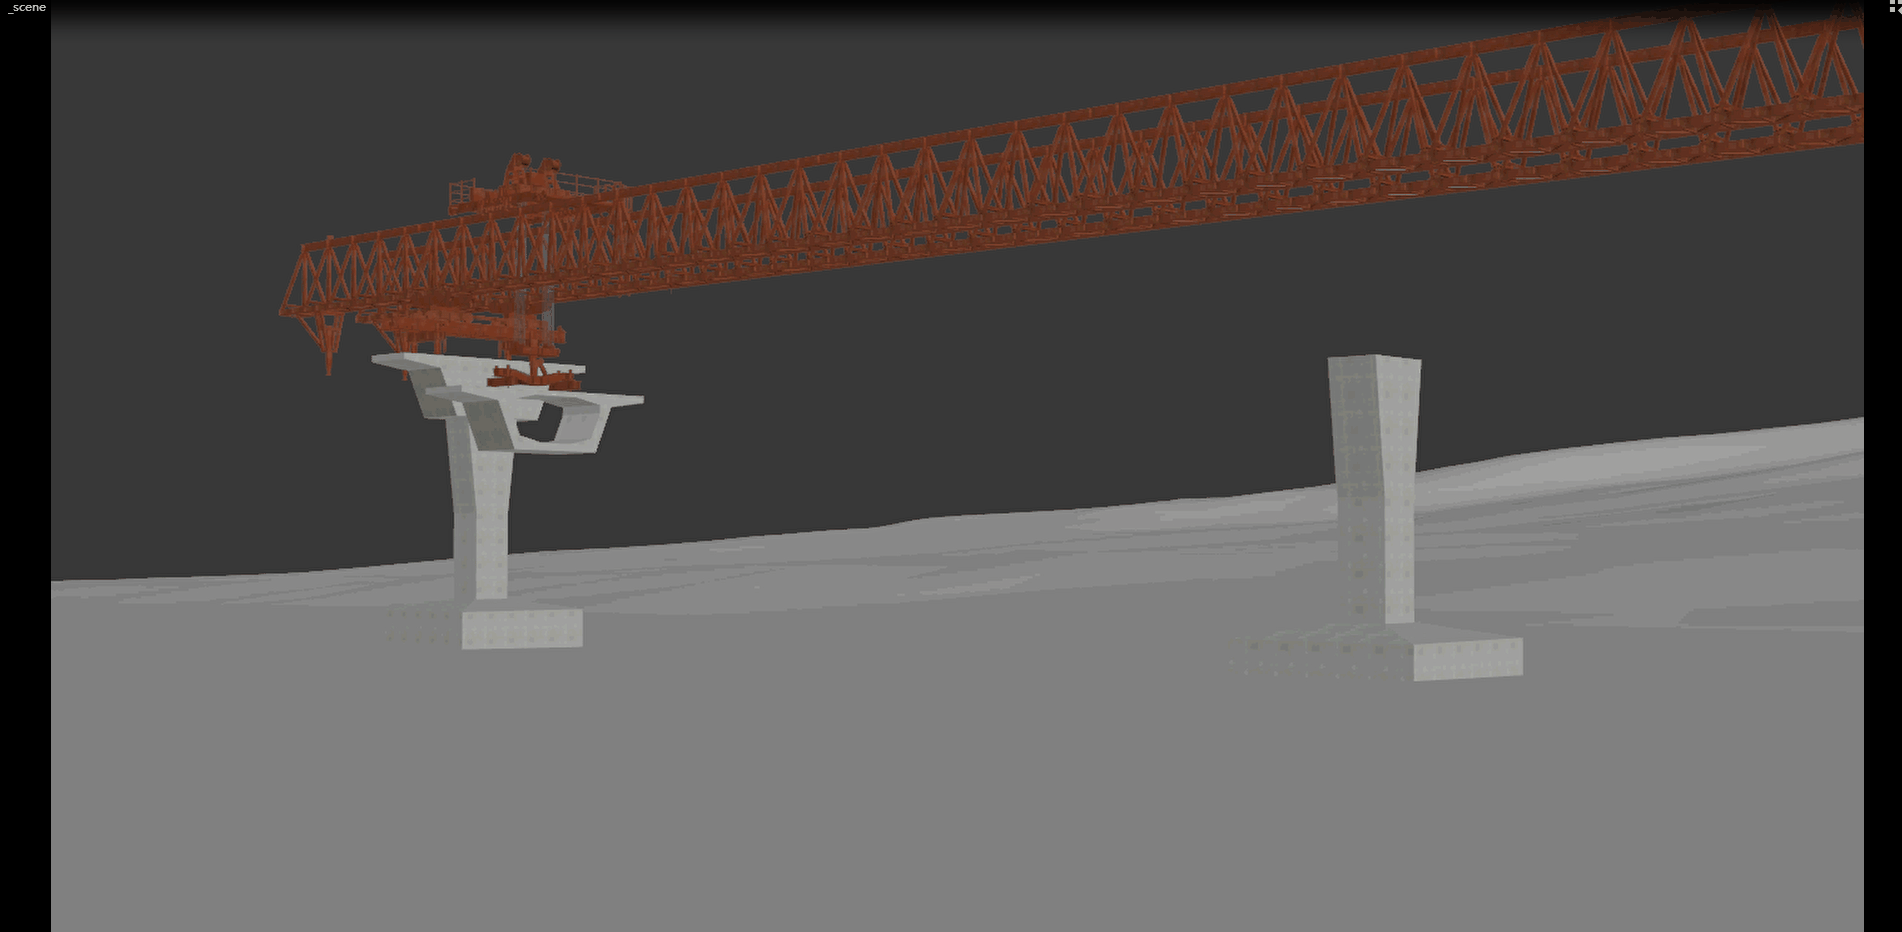 架桥机 工程模型 运梁车 可做动画 特写镜头 效果图